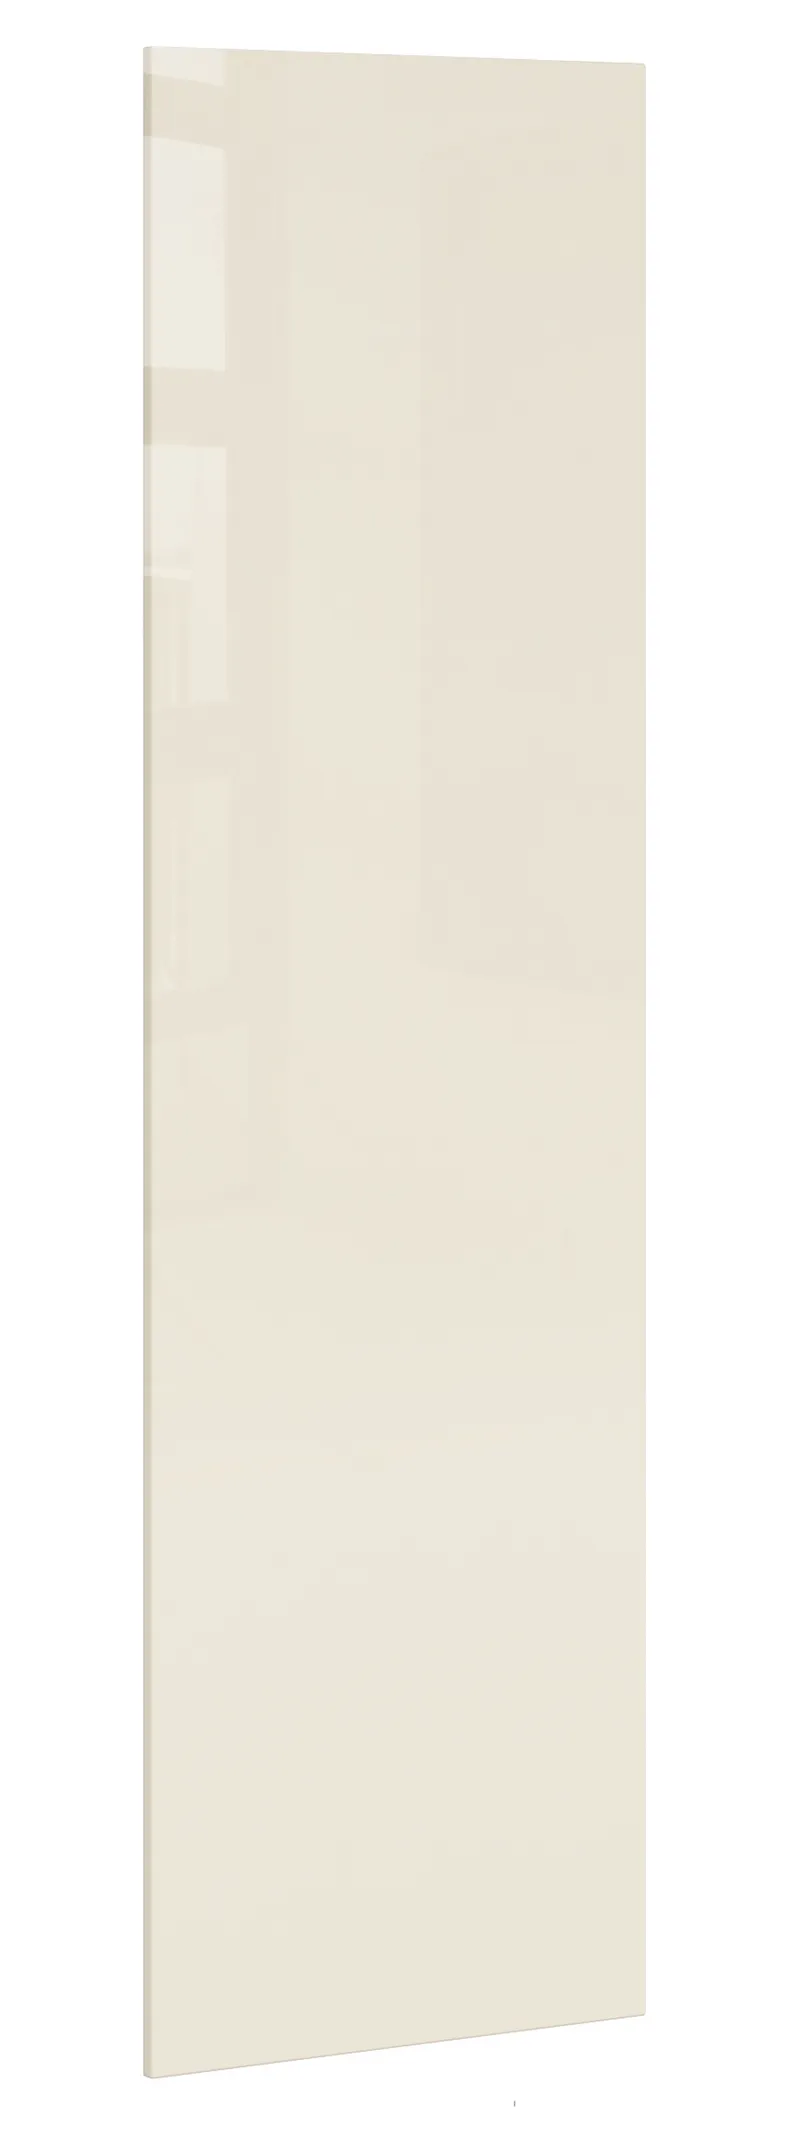 BRW Підошва L6 197 см бічна панель магнолія перлина, альпійський білий/магнолія перламутровий FM_PA_D_/197-MAPE фото №2